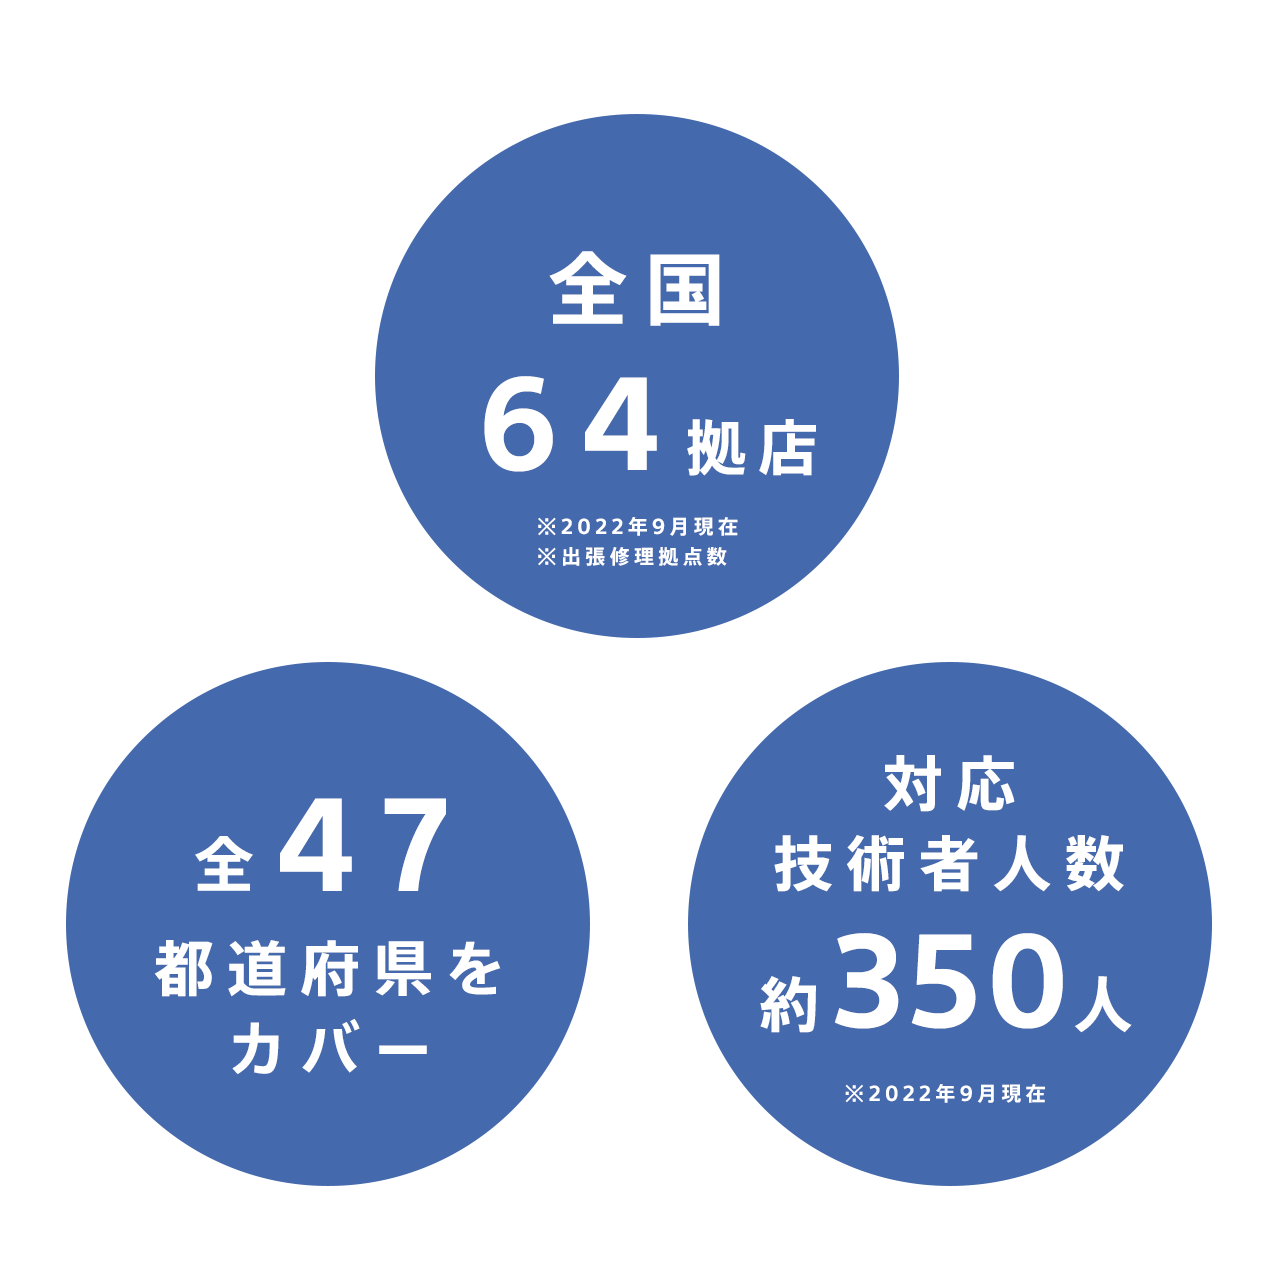 出張修理拠点数全国64拠店、全47都道府県をカバー。対応技術者は約350名在籍。※2022年9月現在